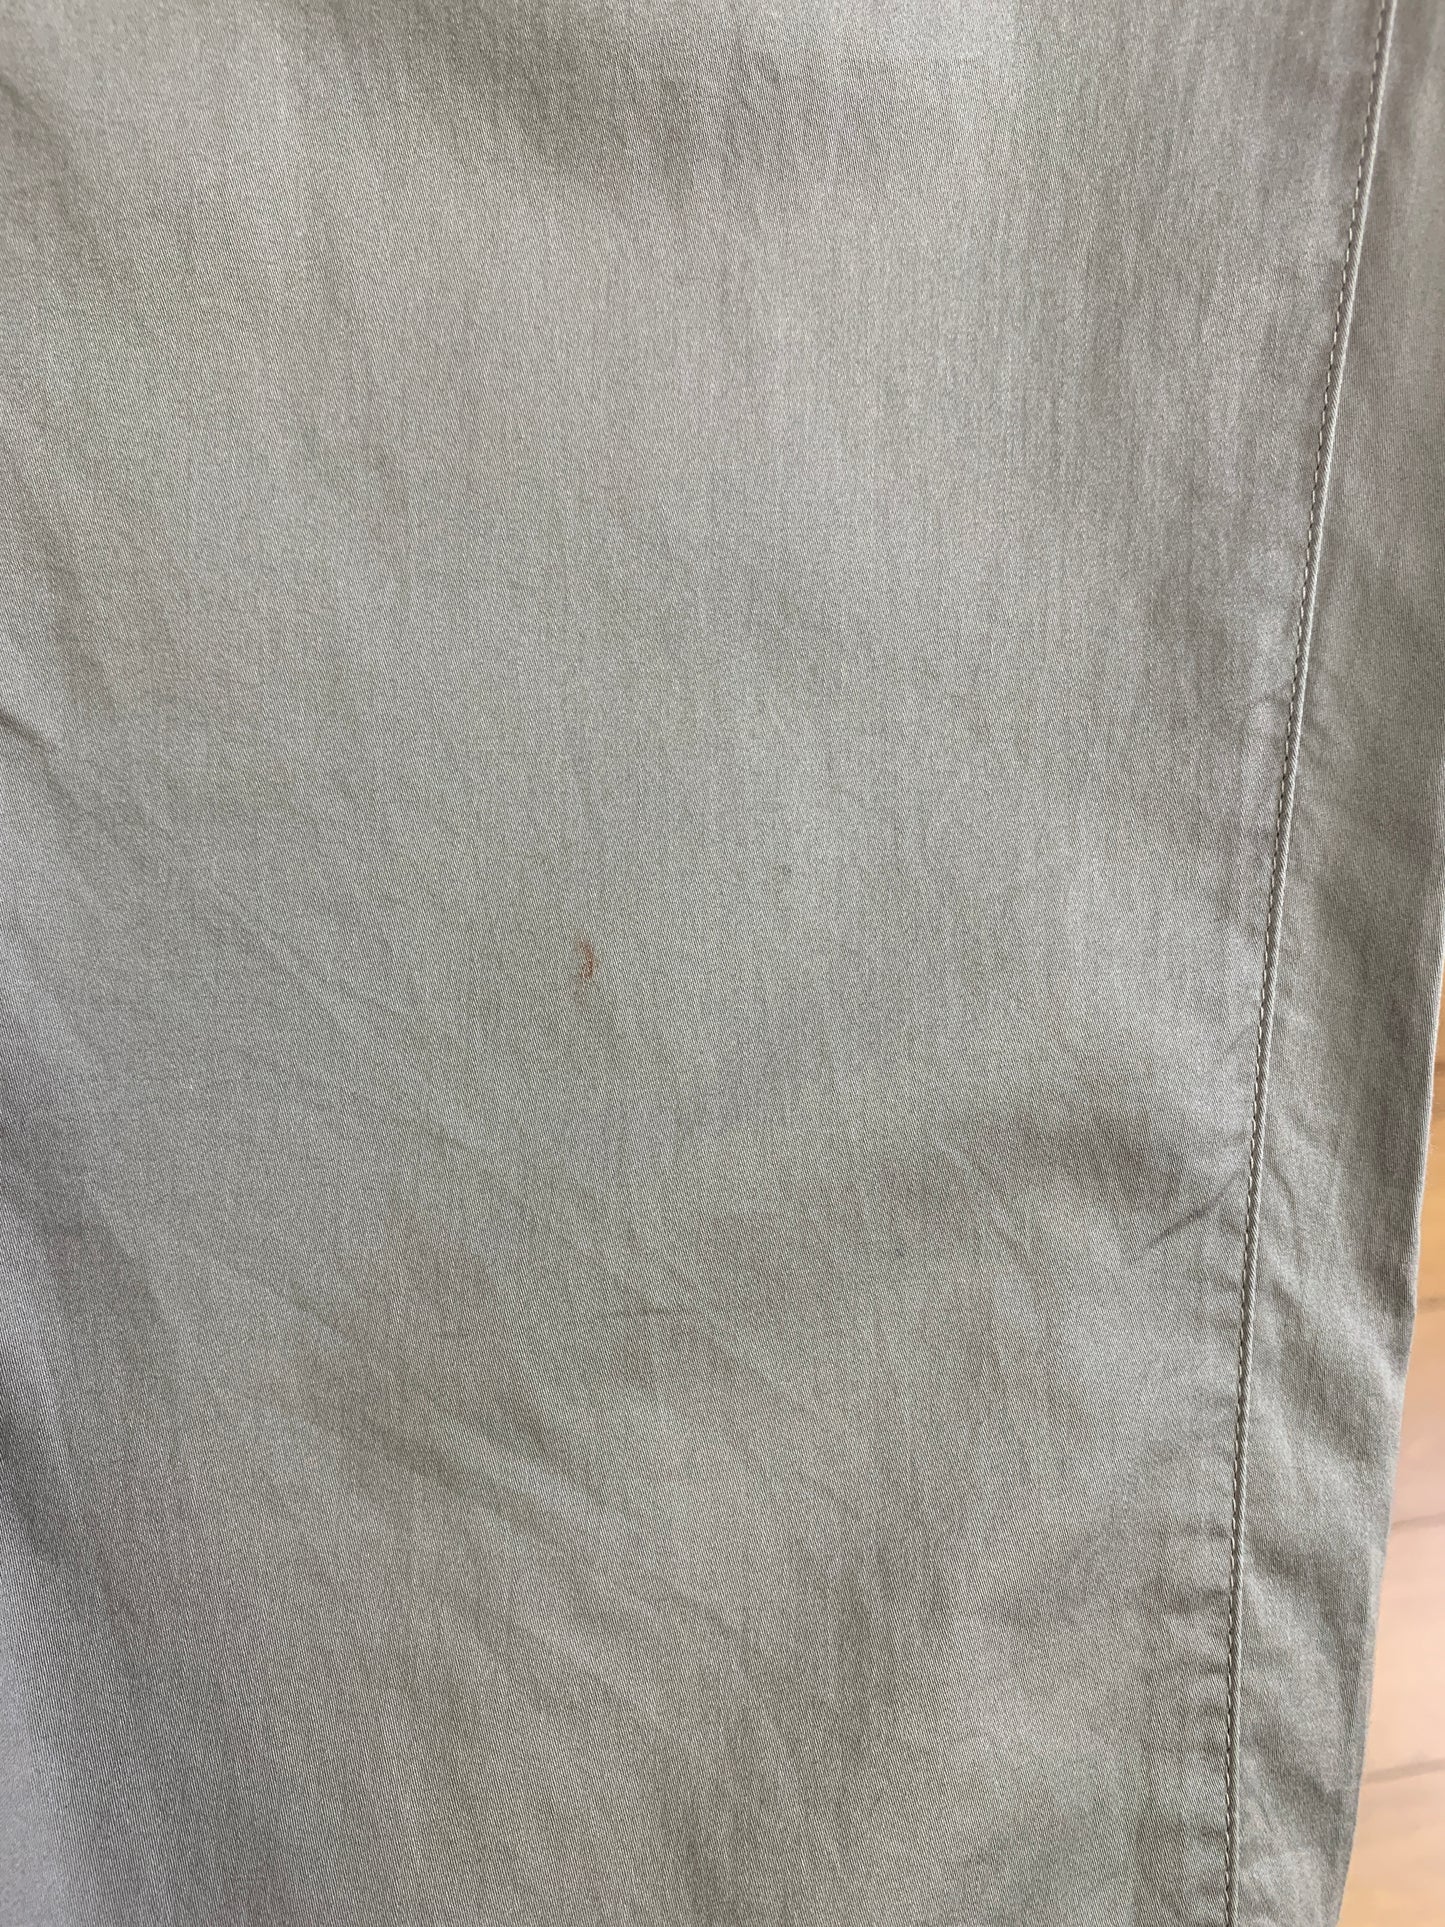 Pantalon vert lustré en coton lavable (XS)